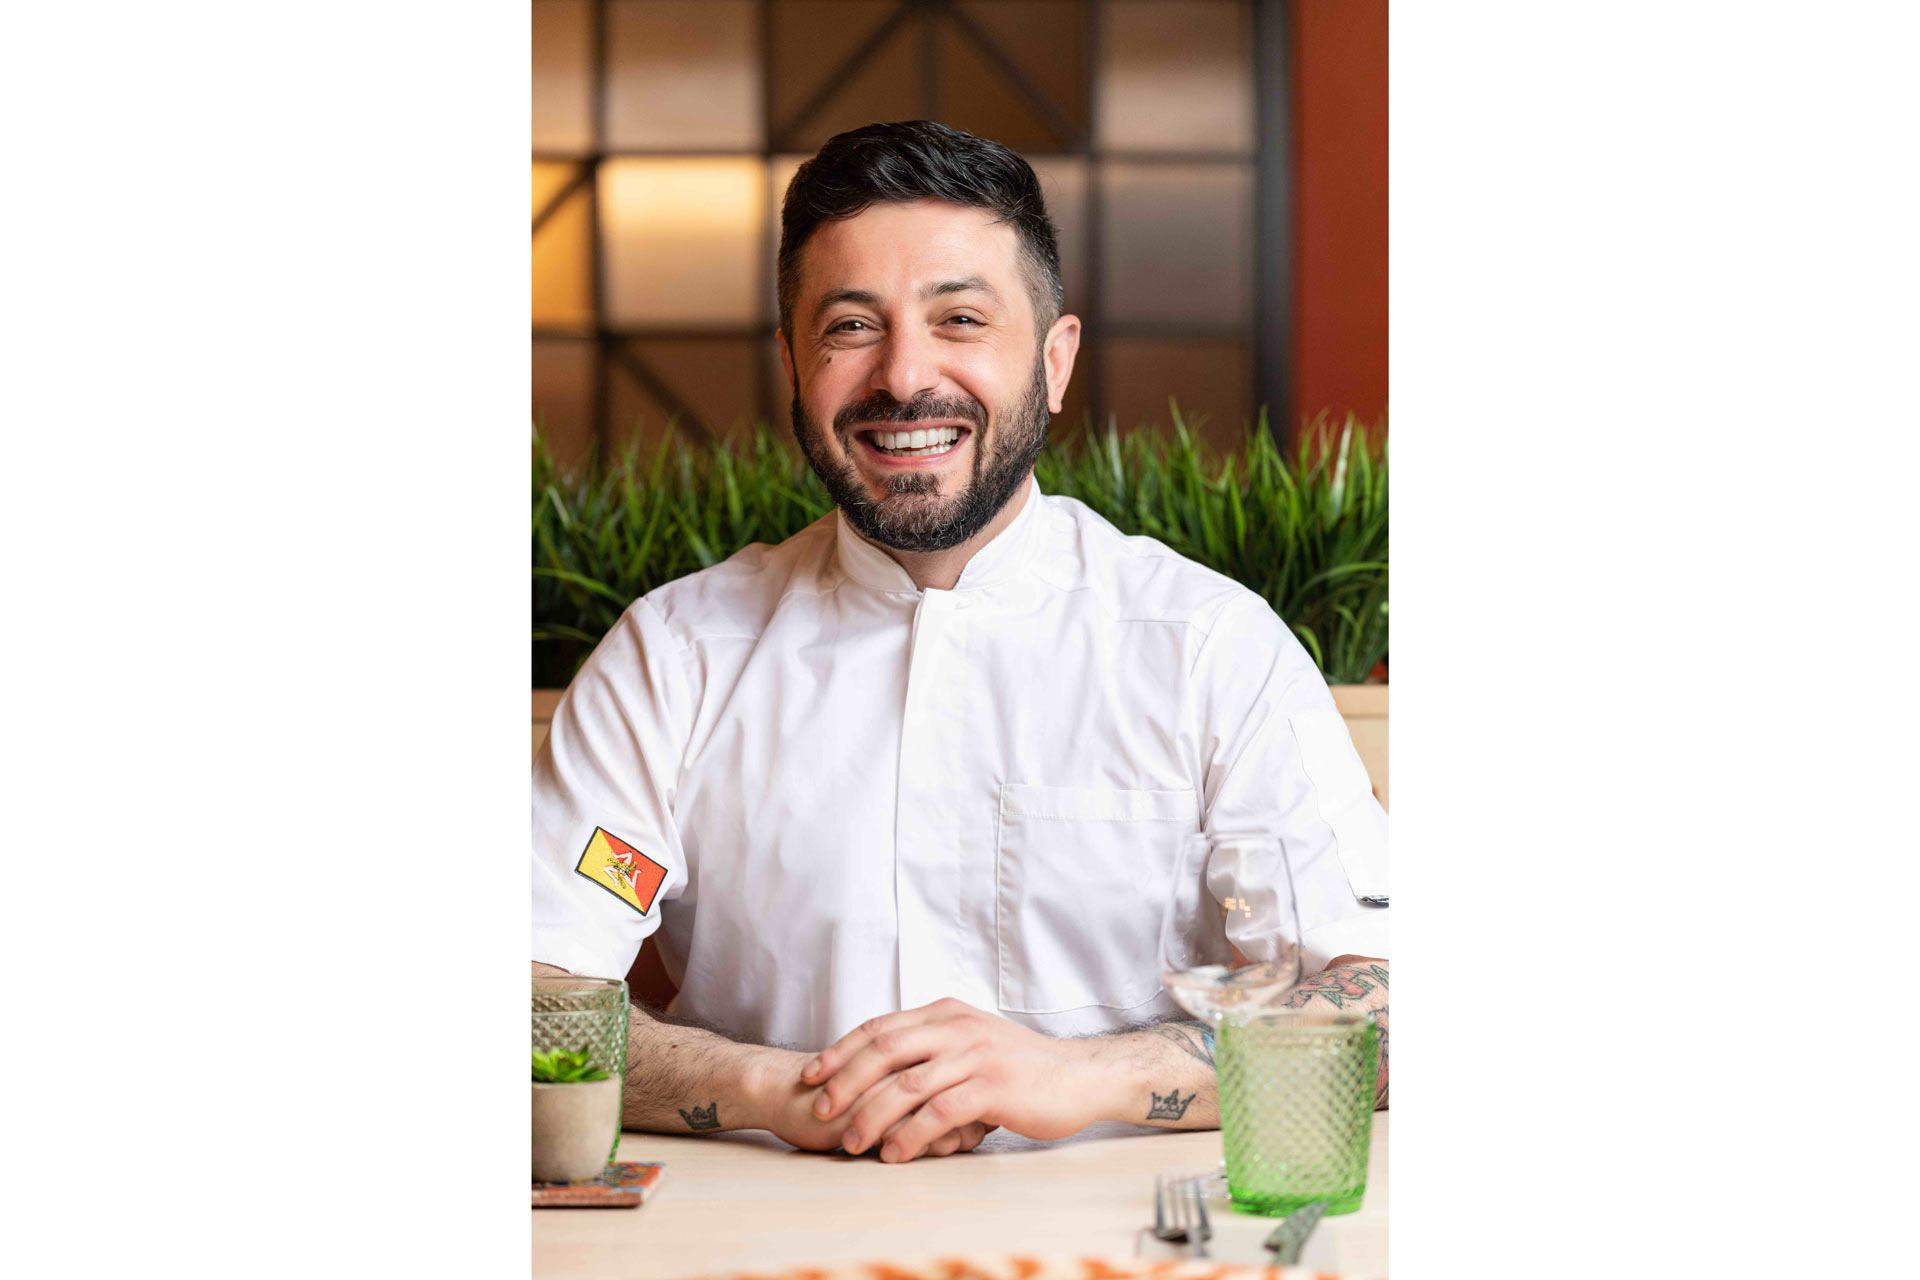 Vittorio Meli, a Sicilian chef